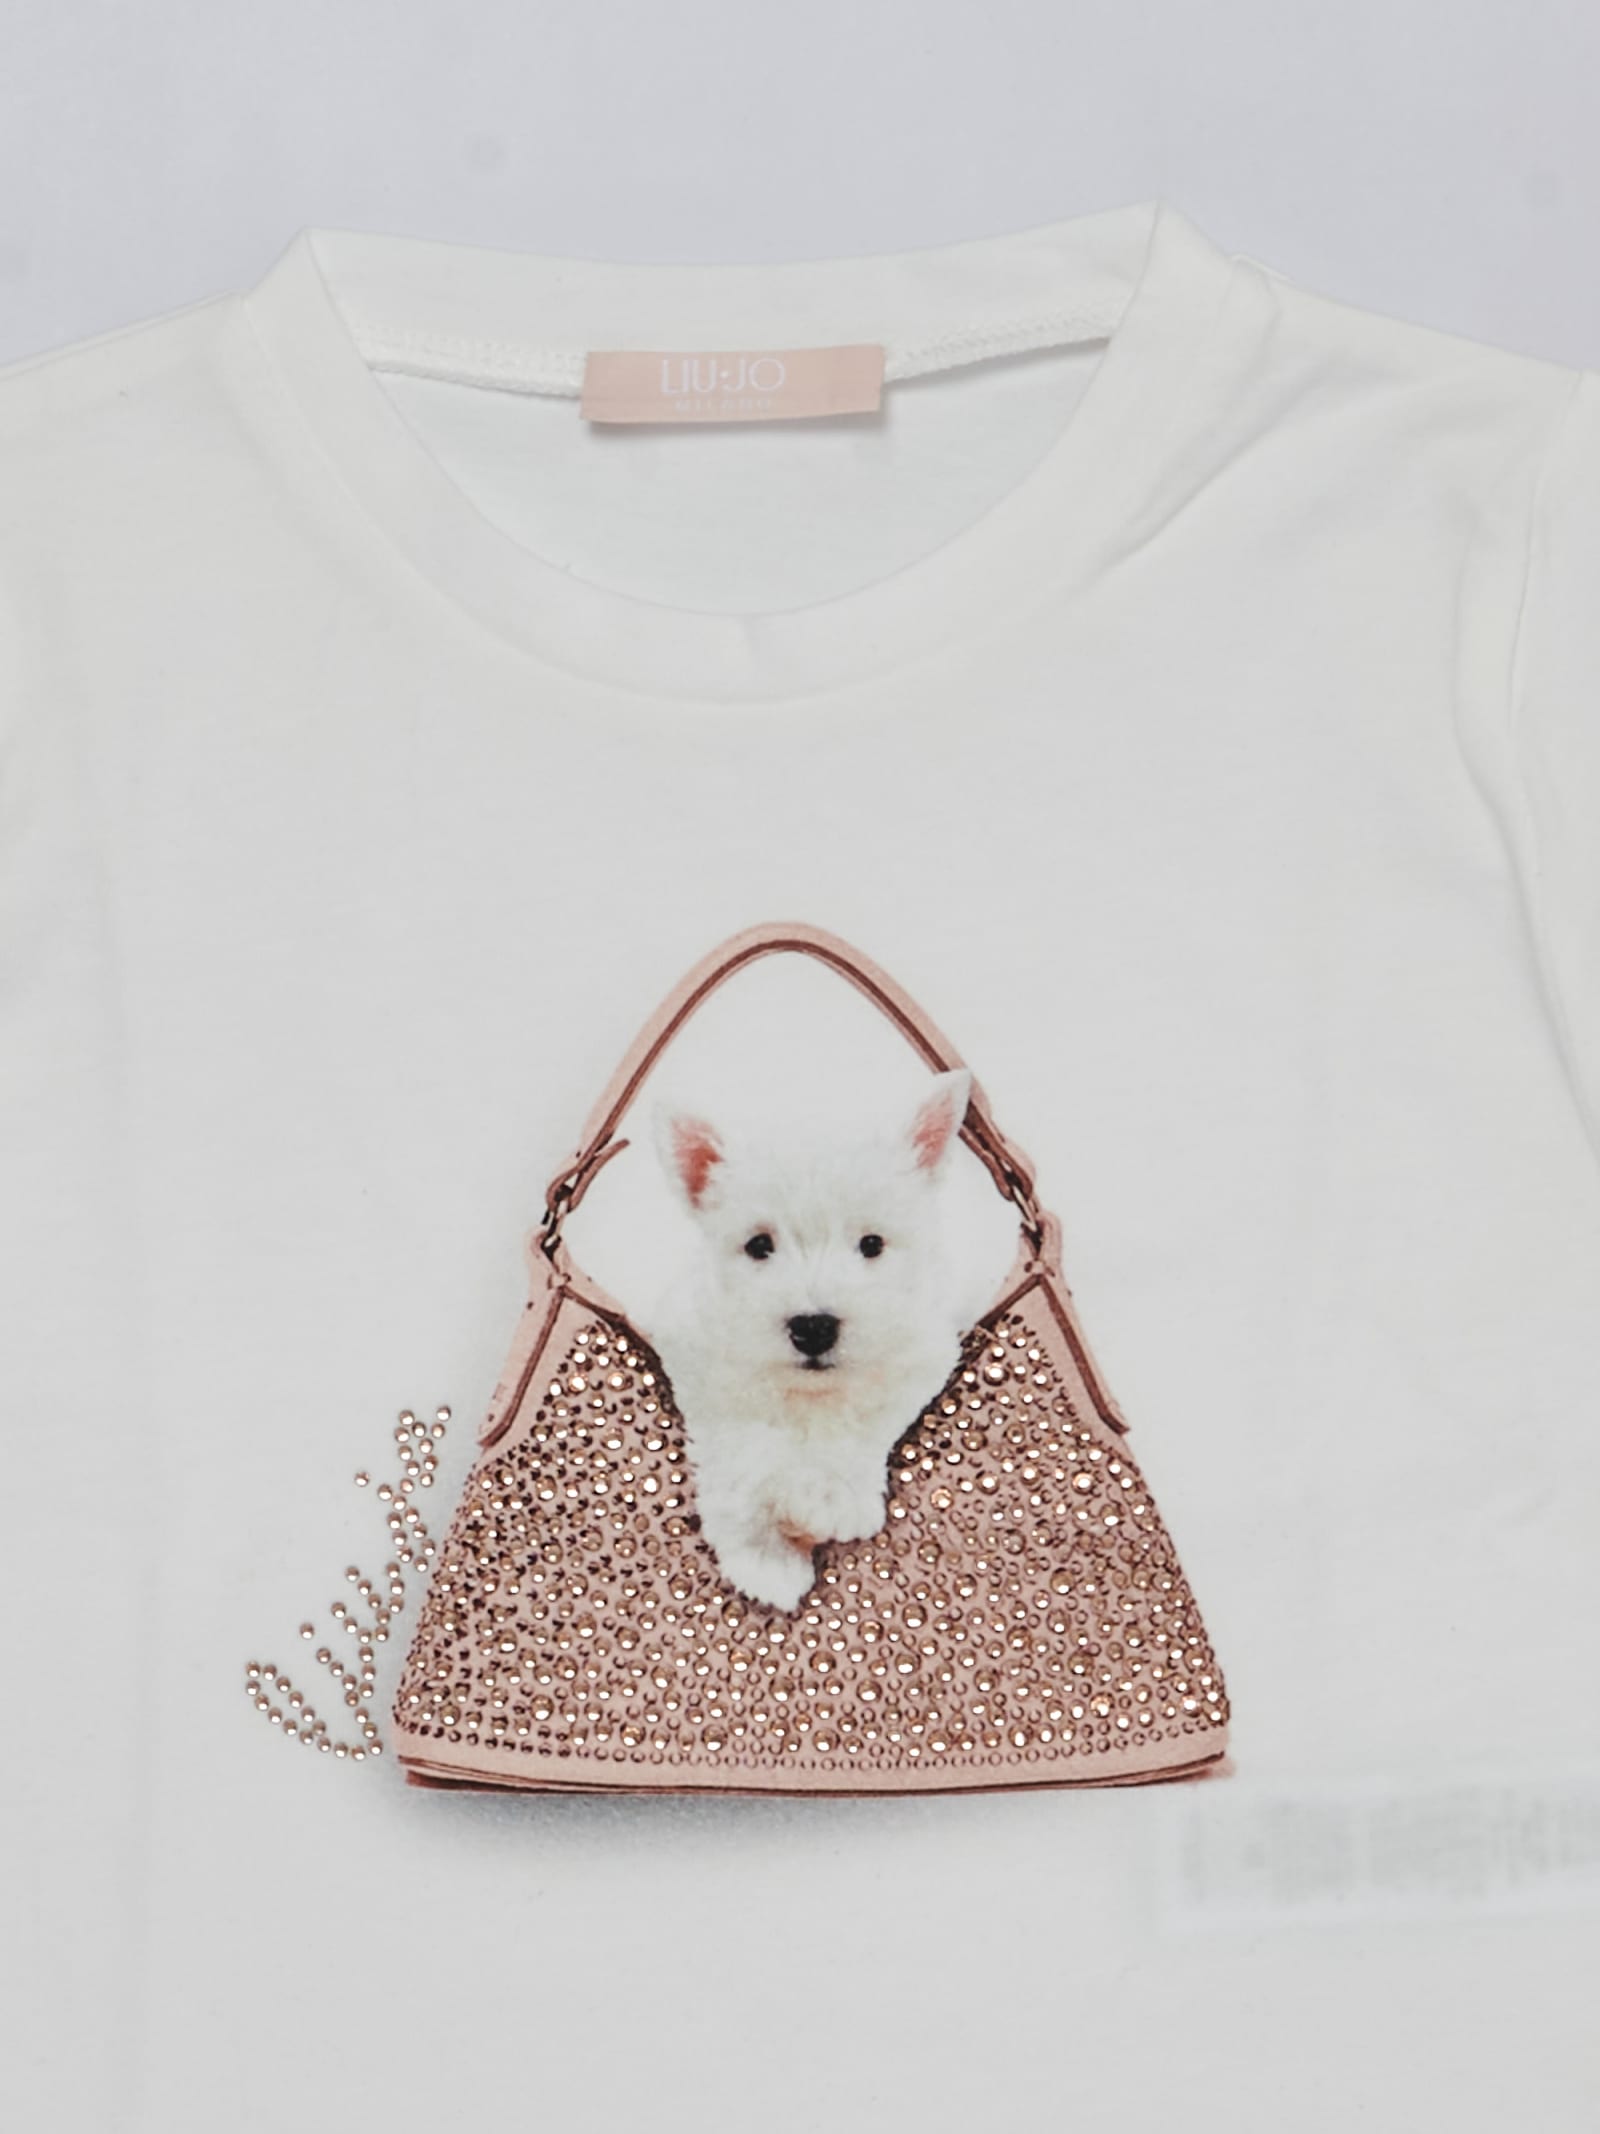 Shop Liu •jo T-shirt T-shirt In Bianco